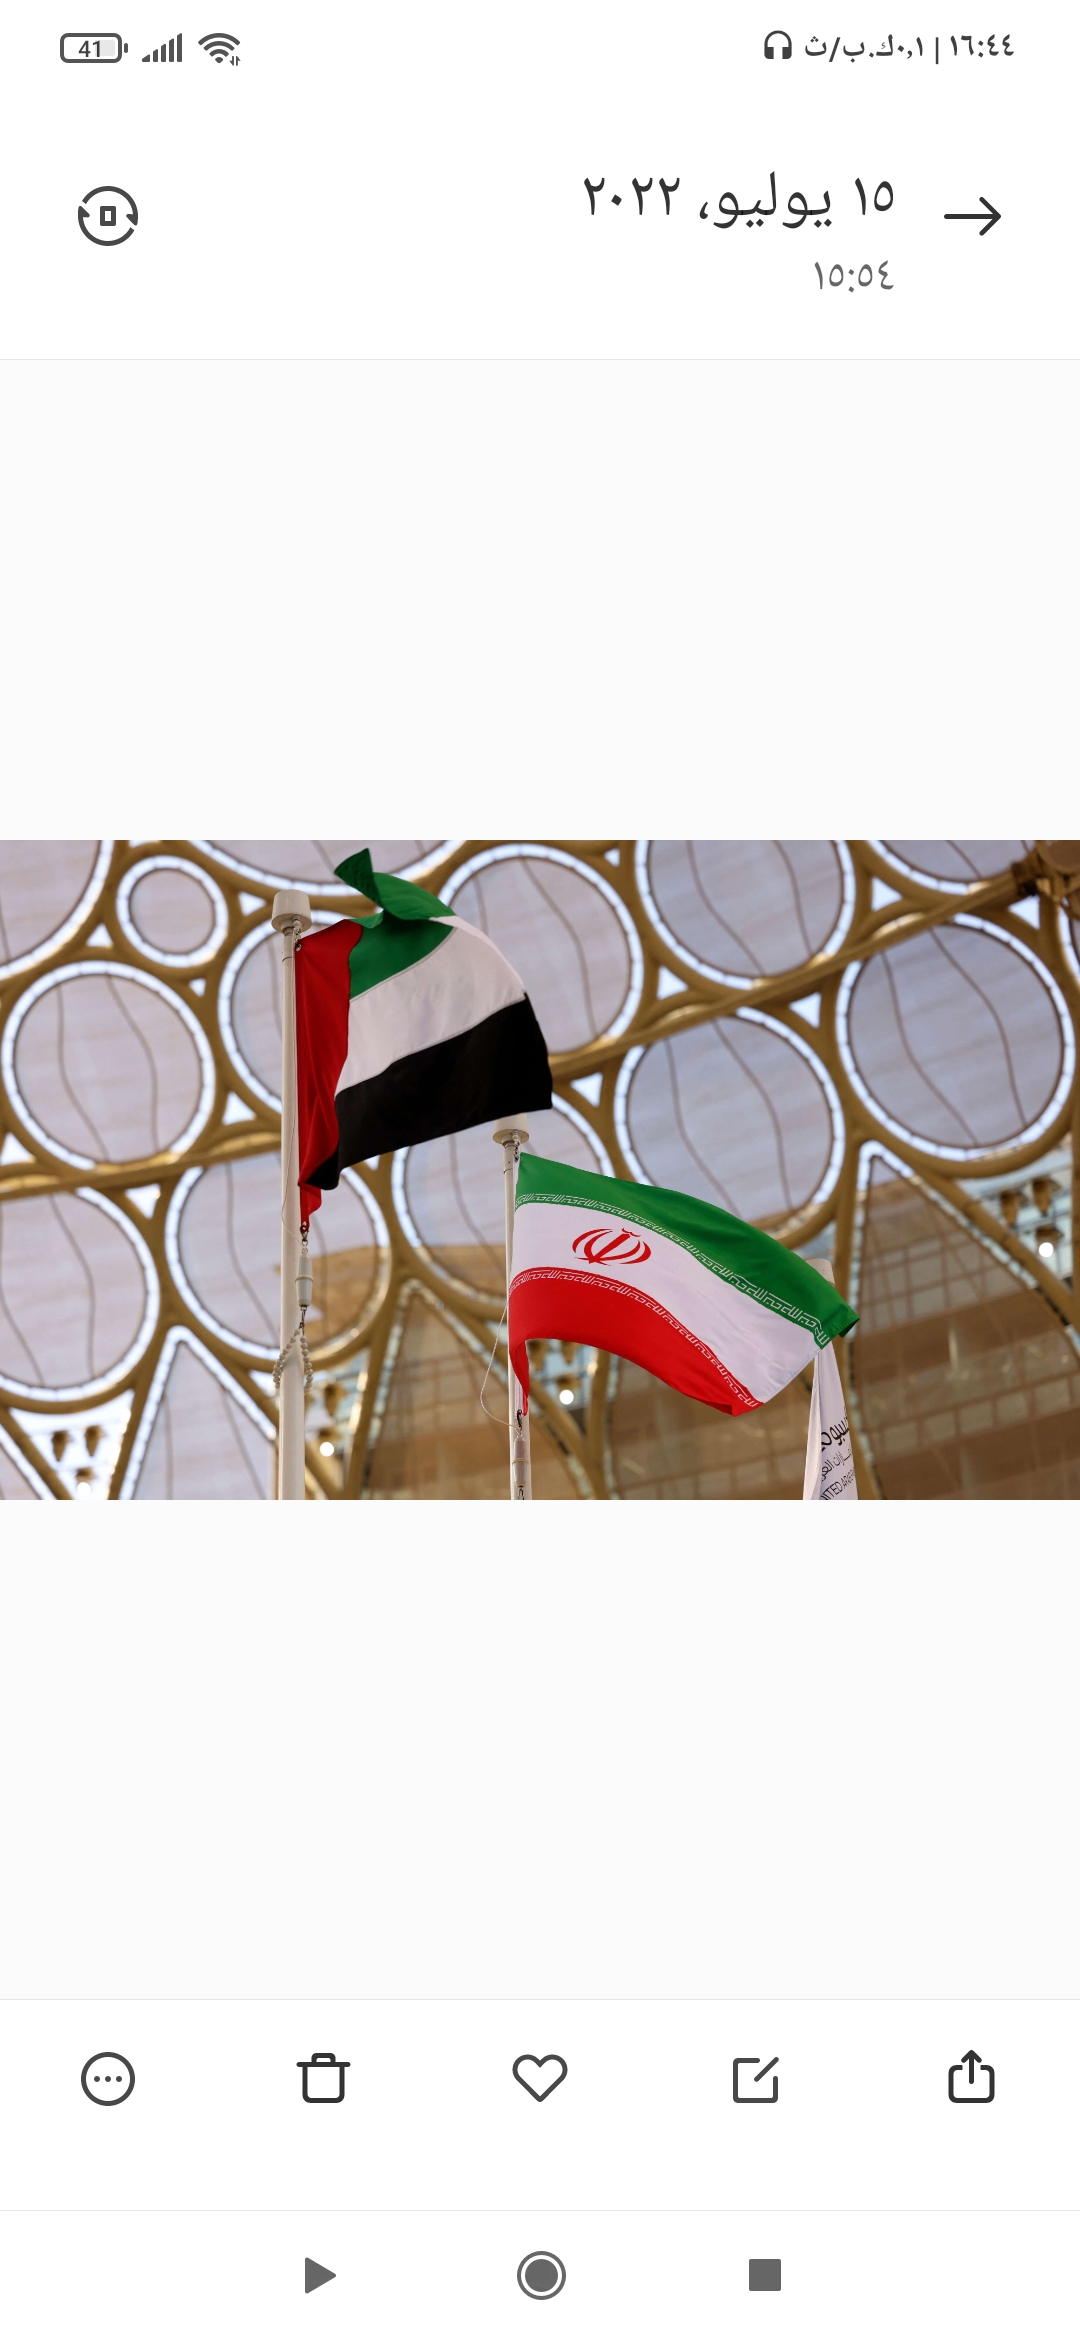 الإمارات تنأى بنفسها عن التحالف ضد إيران وتلتزم باتفاق أوبك بلاس